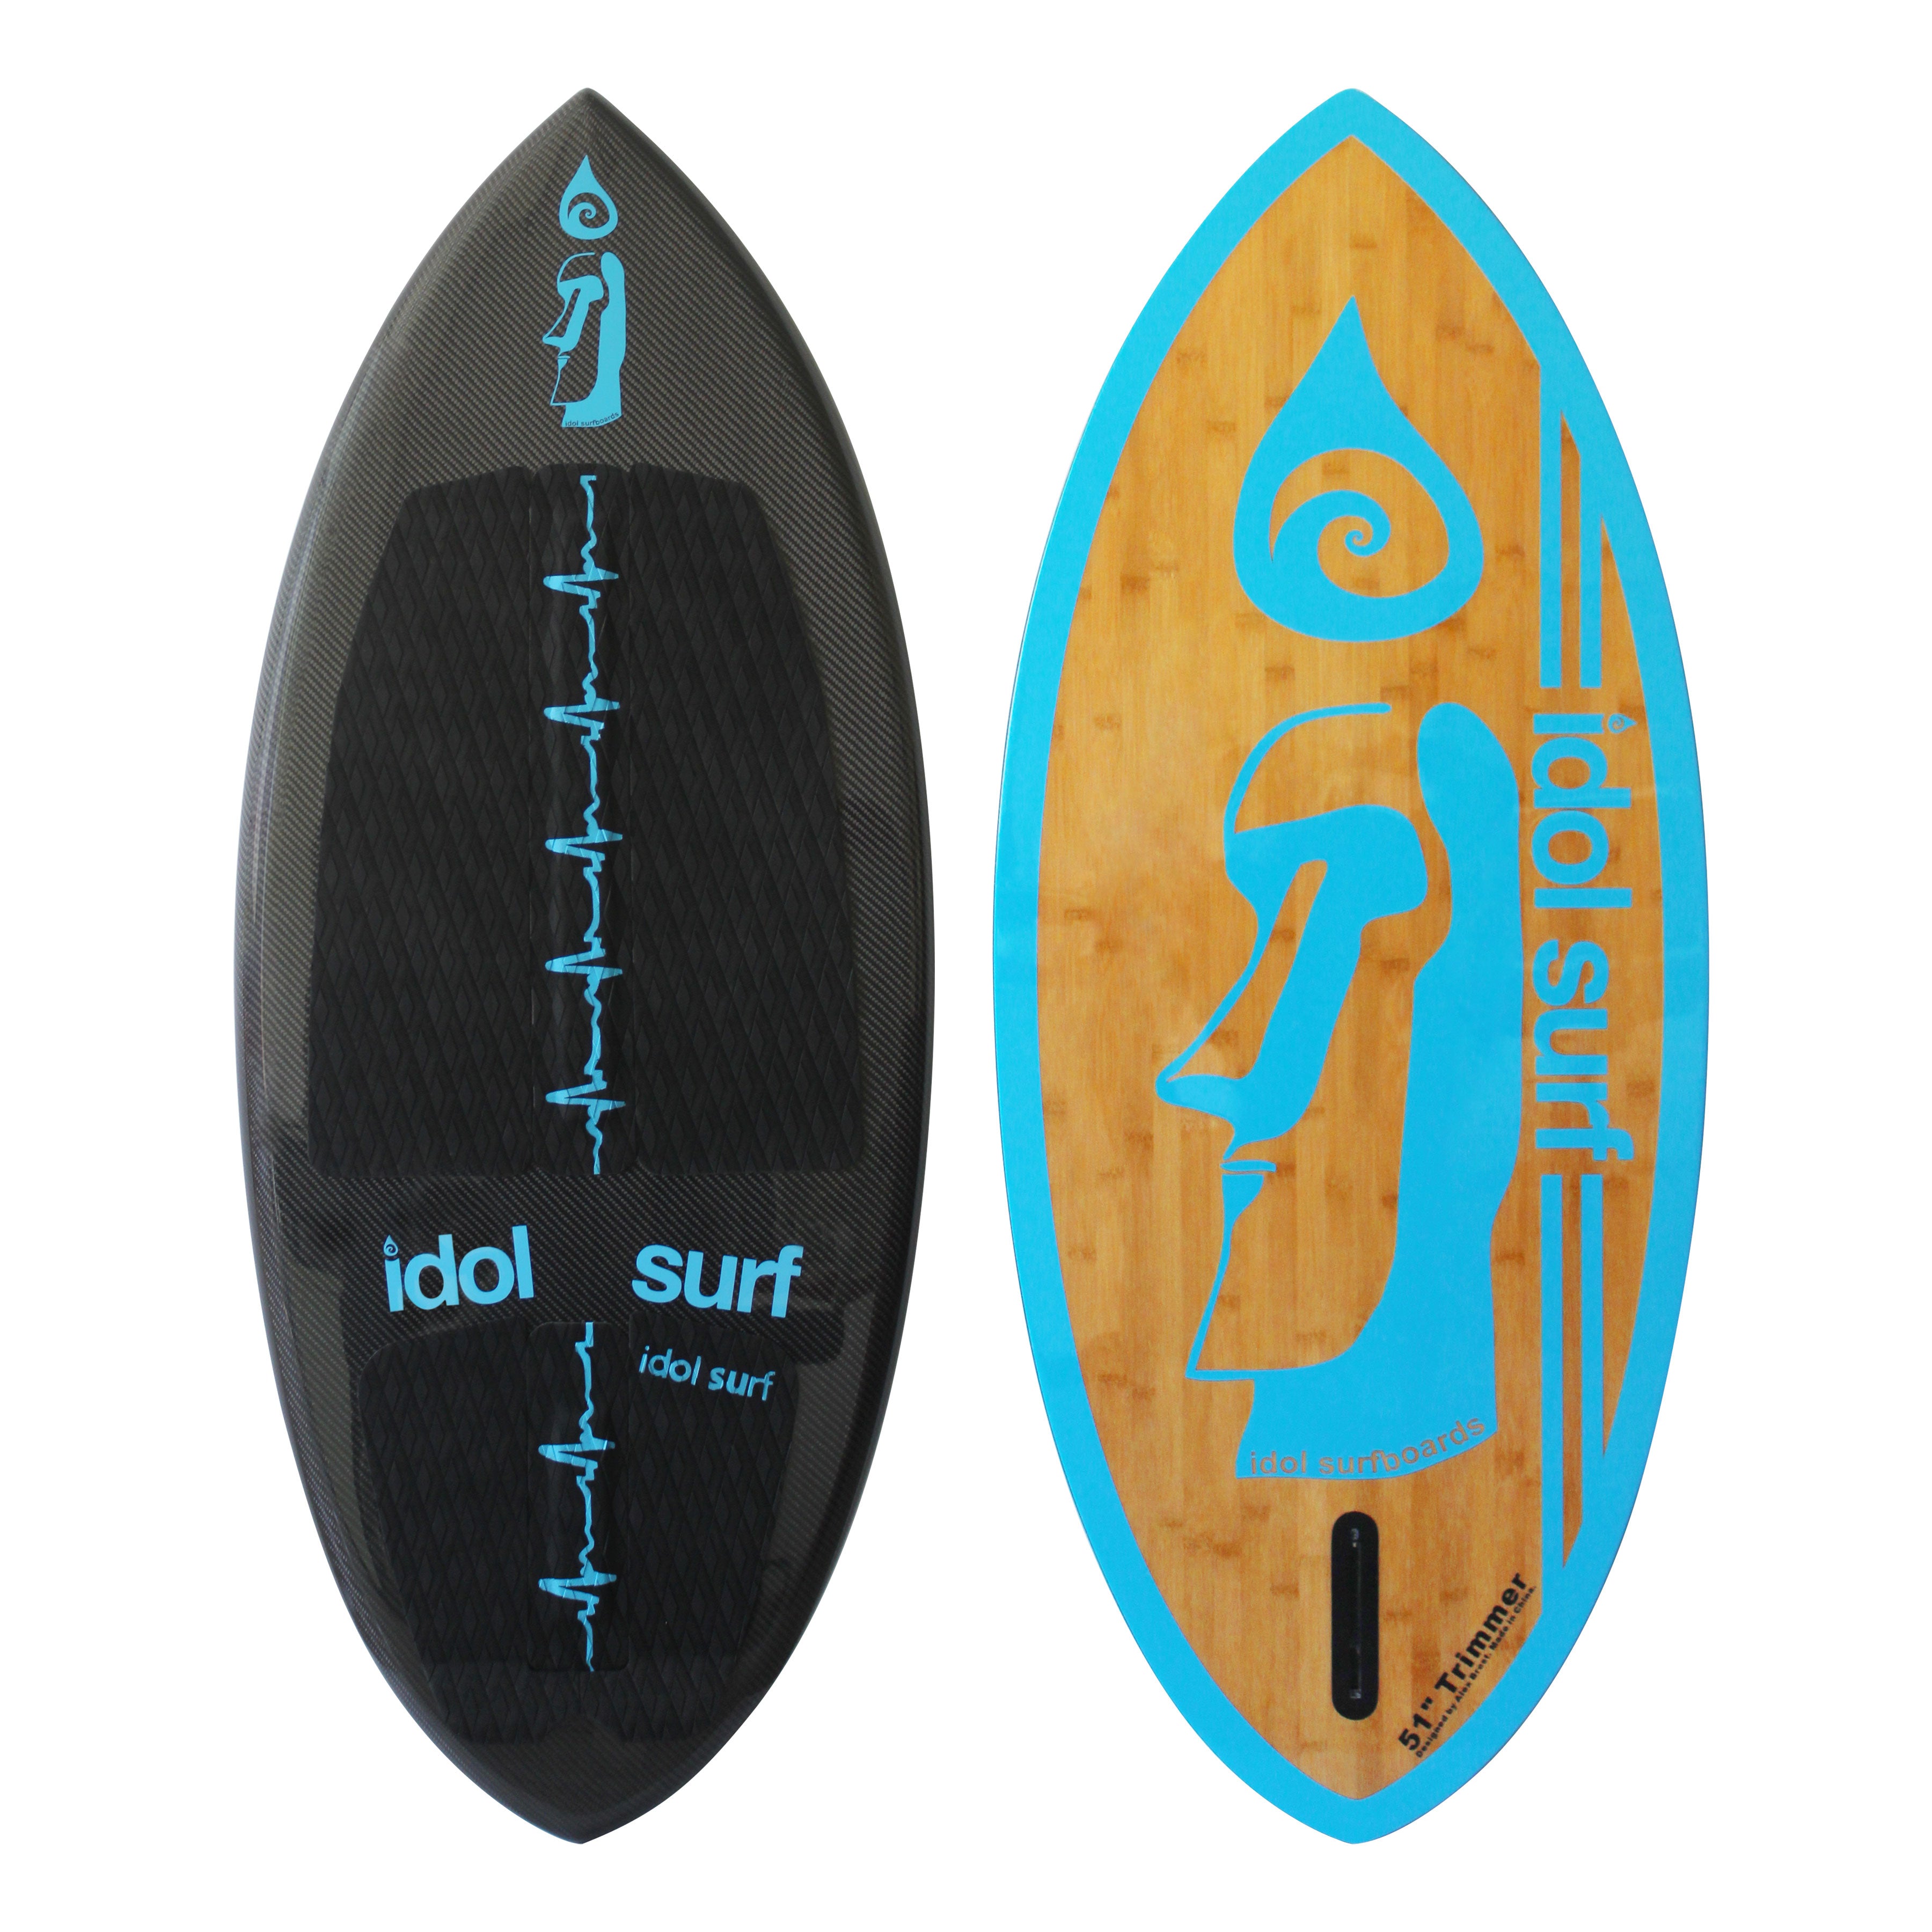 Idol Surf 22-50-51 Trimmer Skim-Style Wake Surfboard - 51"